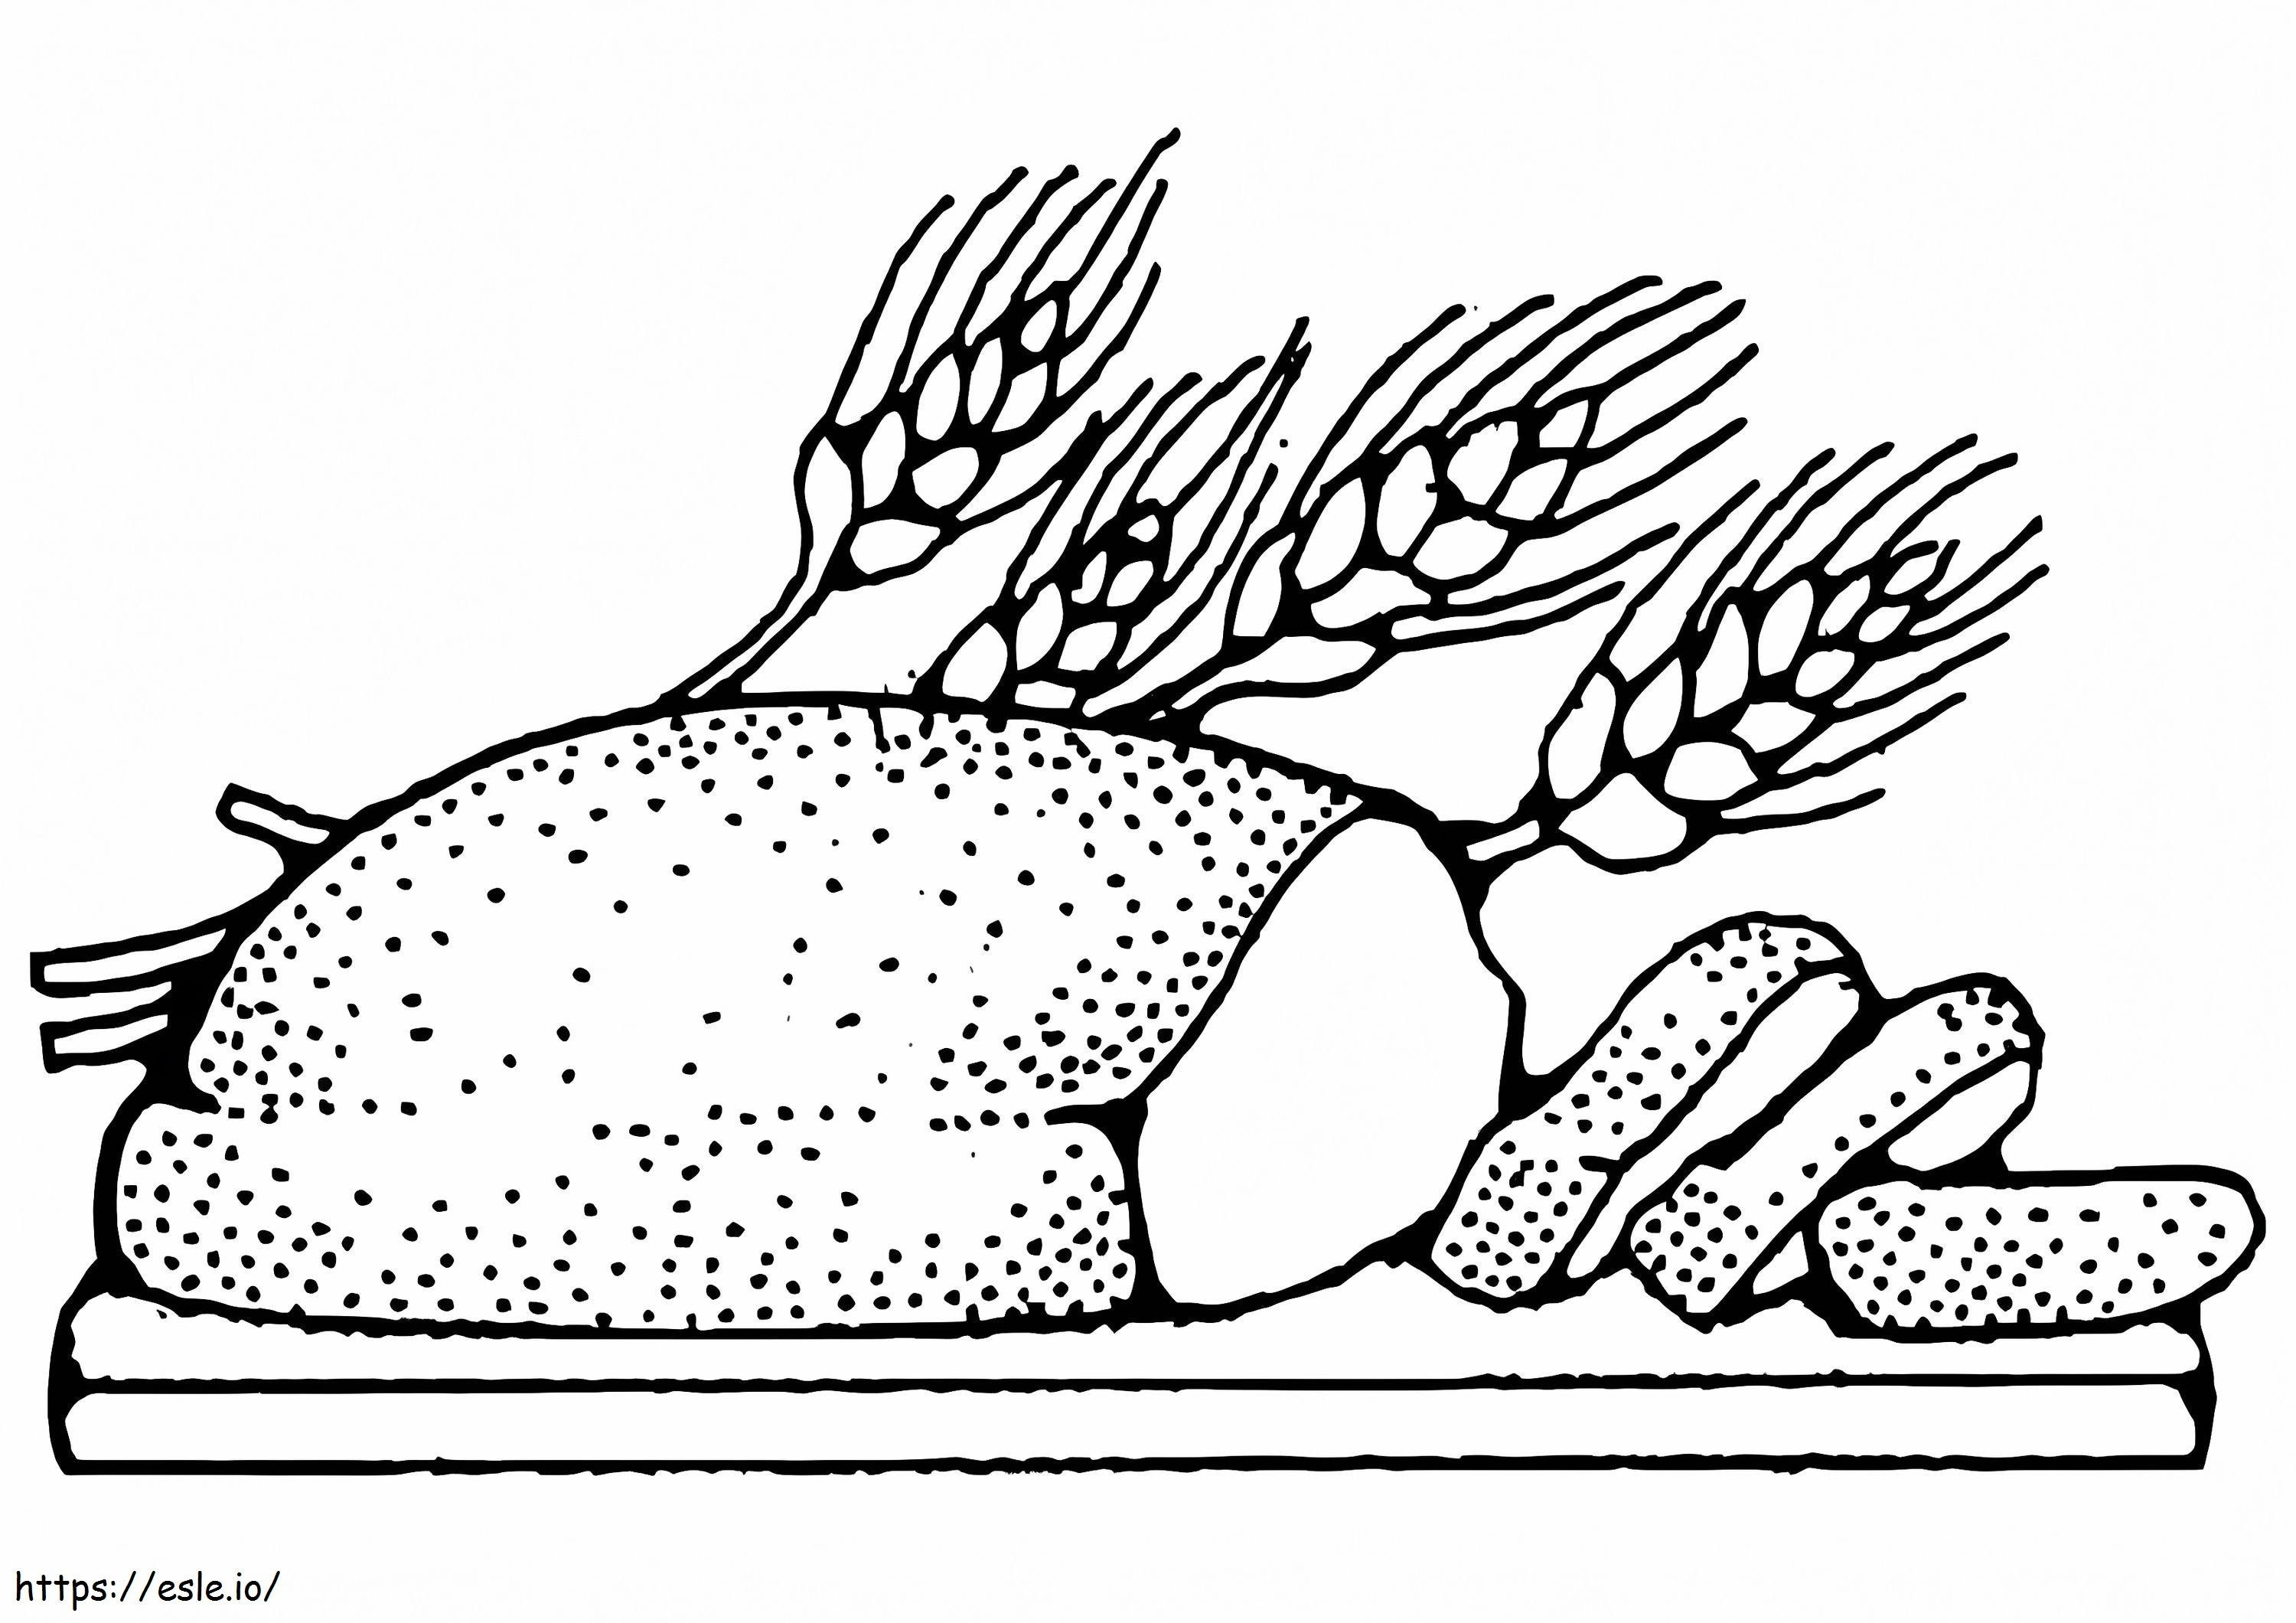 Wheat Grain Bread coloring page